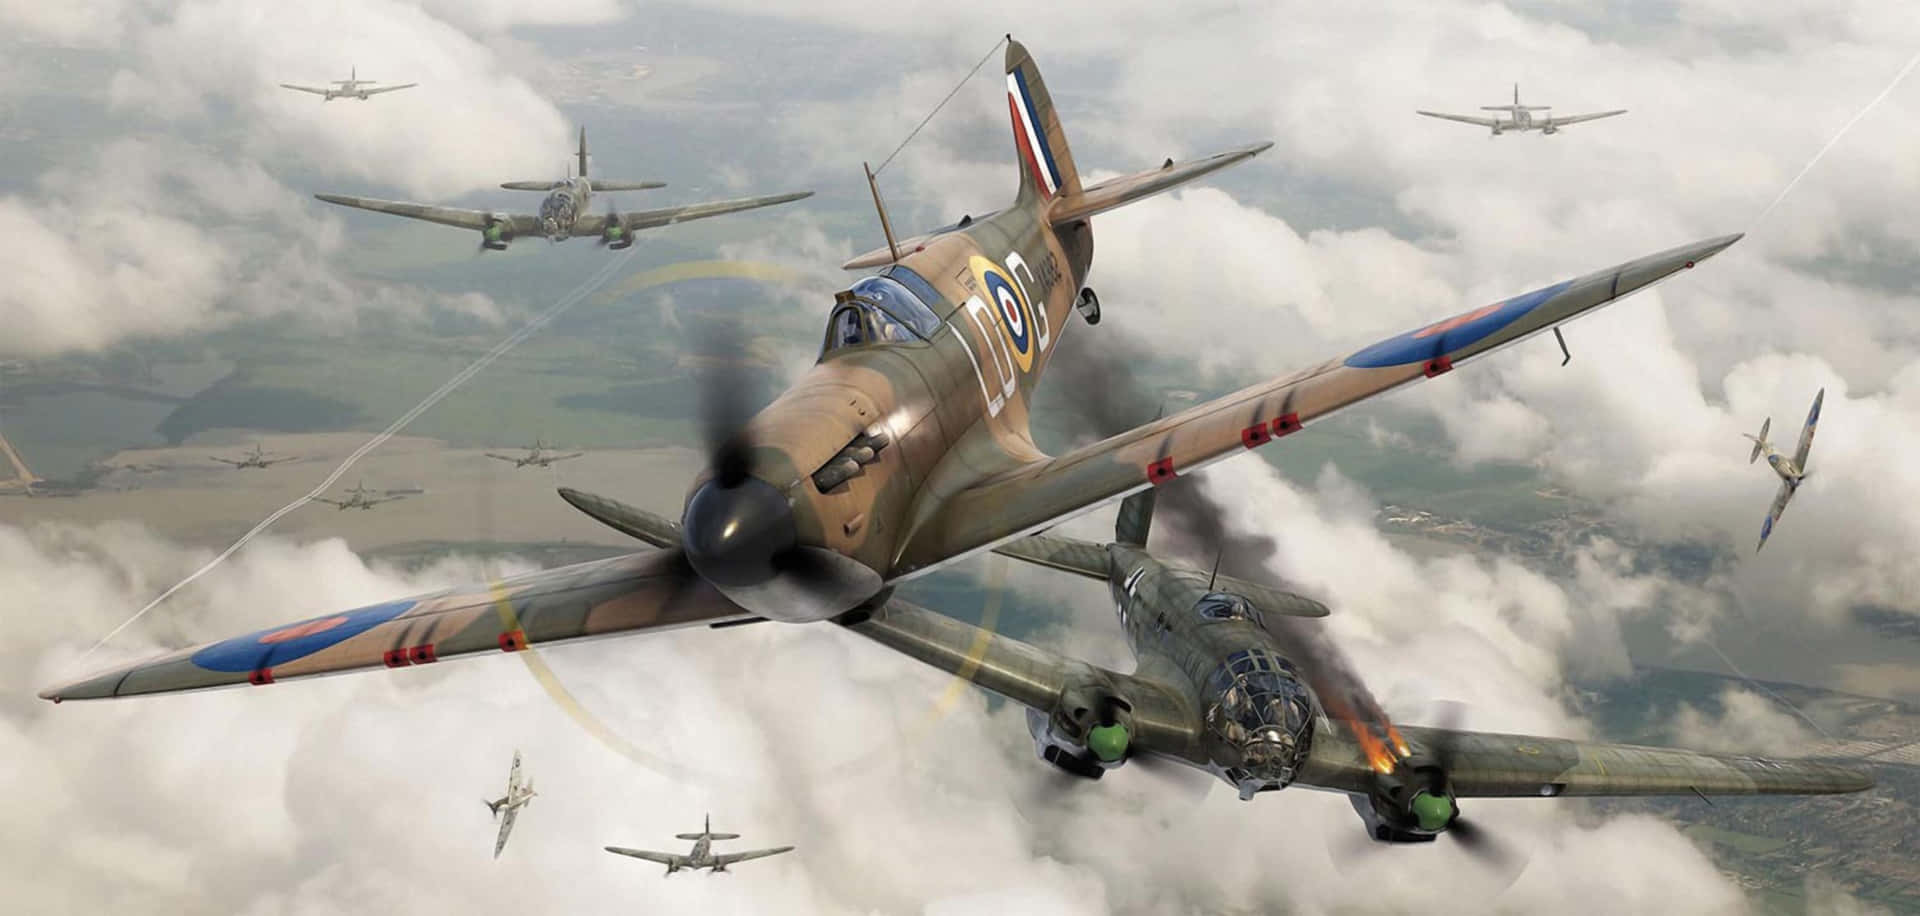 Ettspitfire-flygplan Som Svävar Genom Himlen. Wallpaper